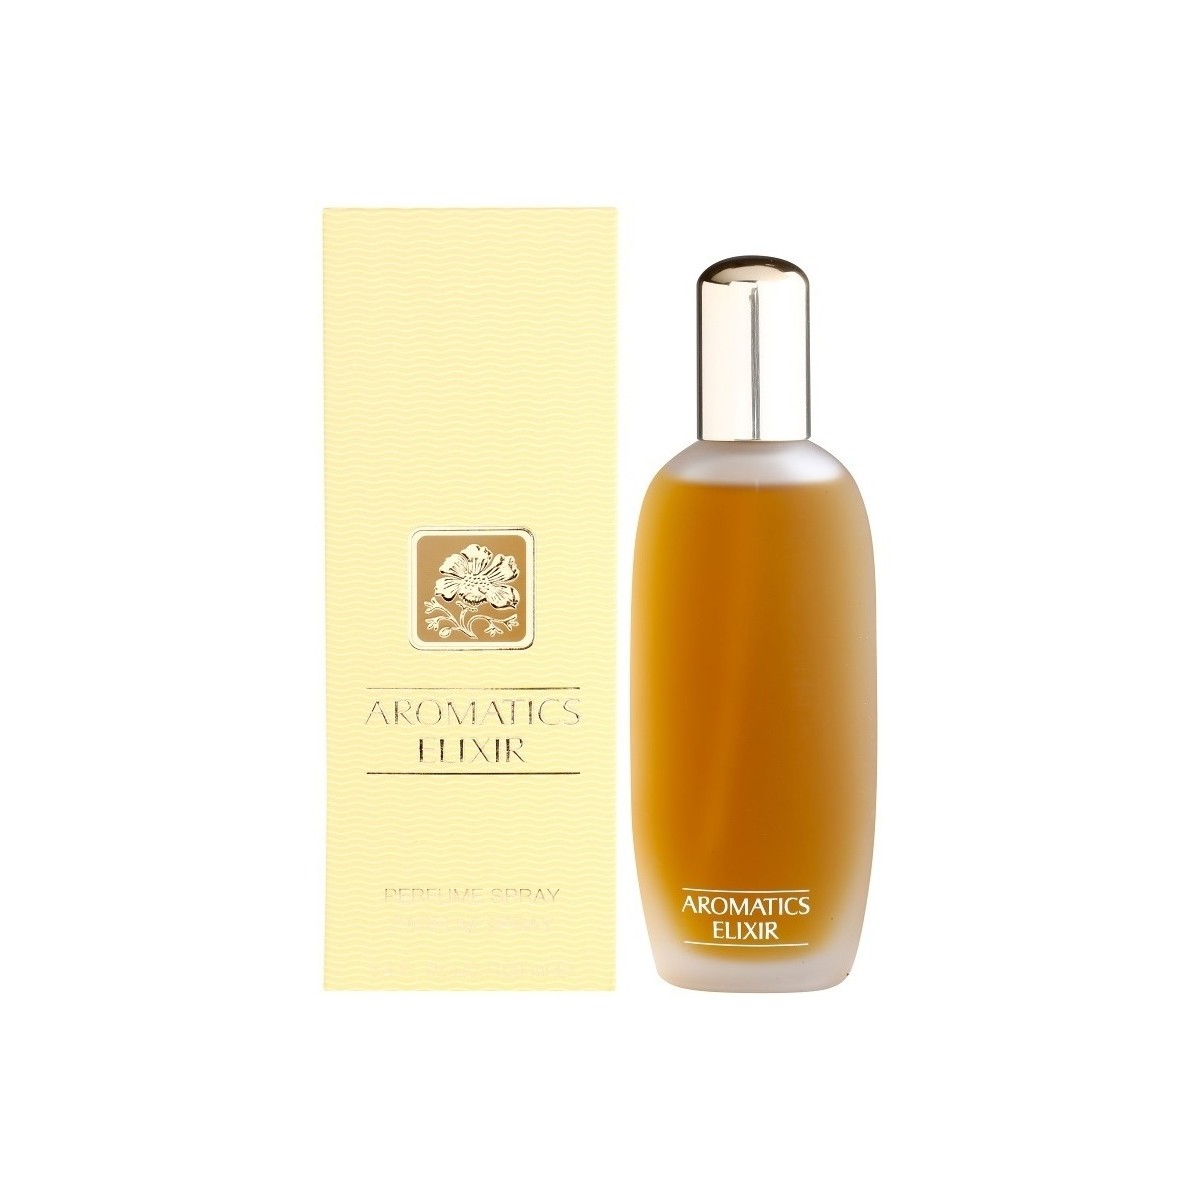 Beauty Damen Eau de parfum  Clinique Aromatics Elixir - Parfüm - 100ml - VERDAMPFER Aromatics Elixir - perfume - 100ml - spray